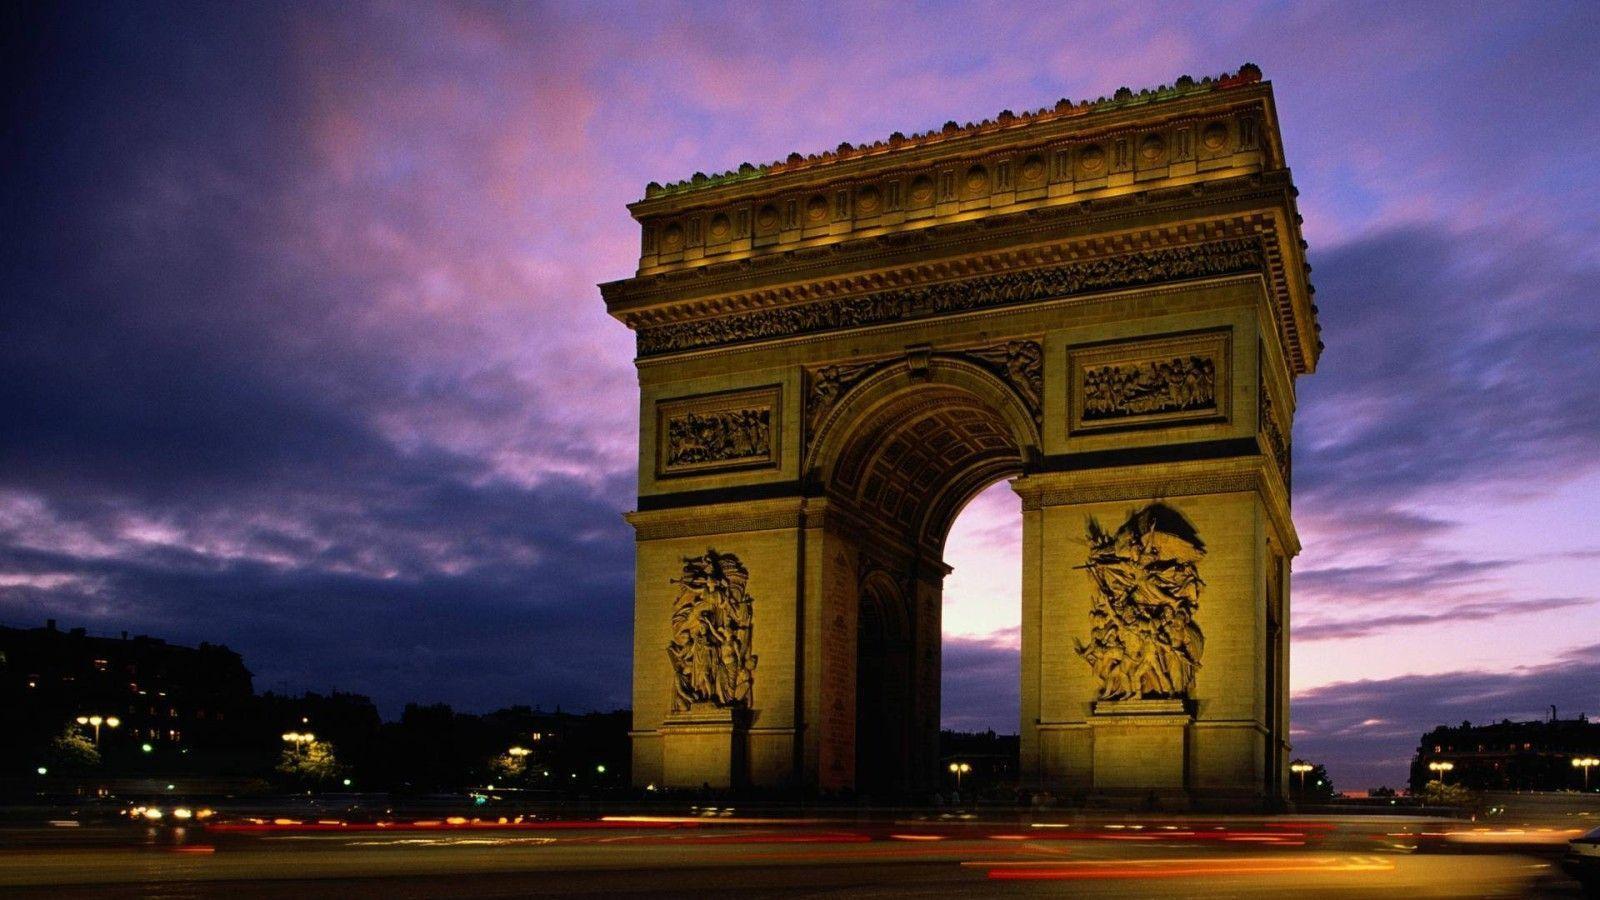 Hd Wallpaper Larc De Triomphe Paris France Wide 1600x900PX Paris